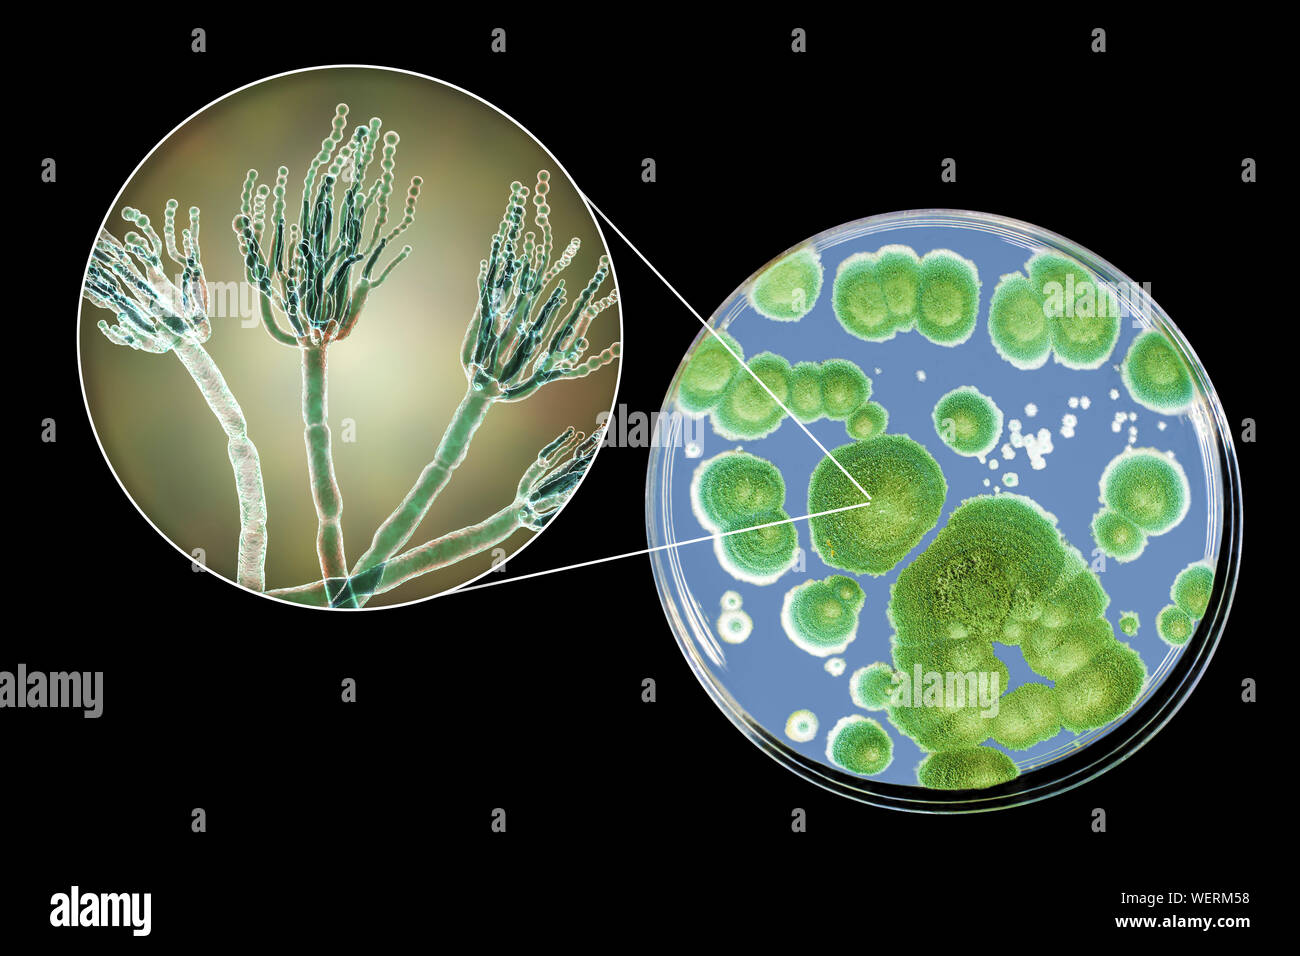 Penicillium fungus, composite image Stock Photo